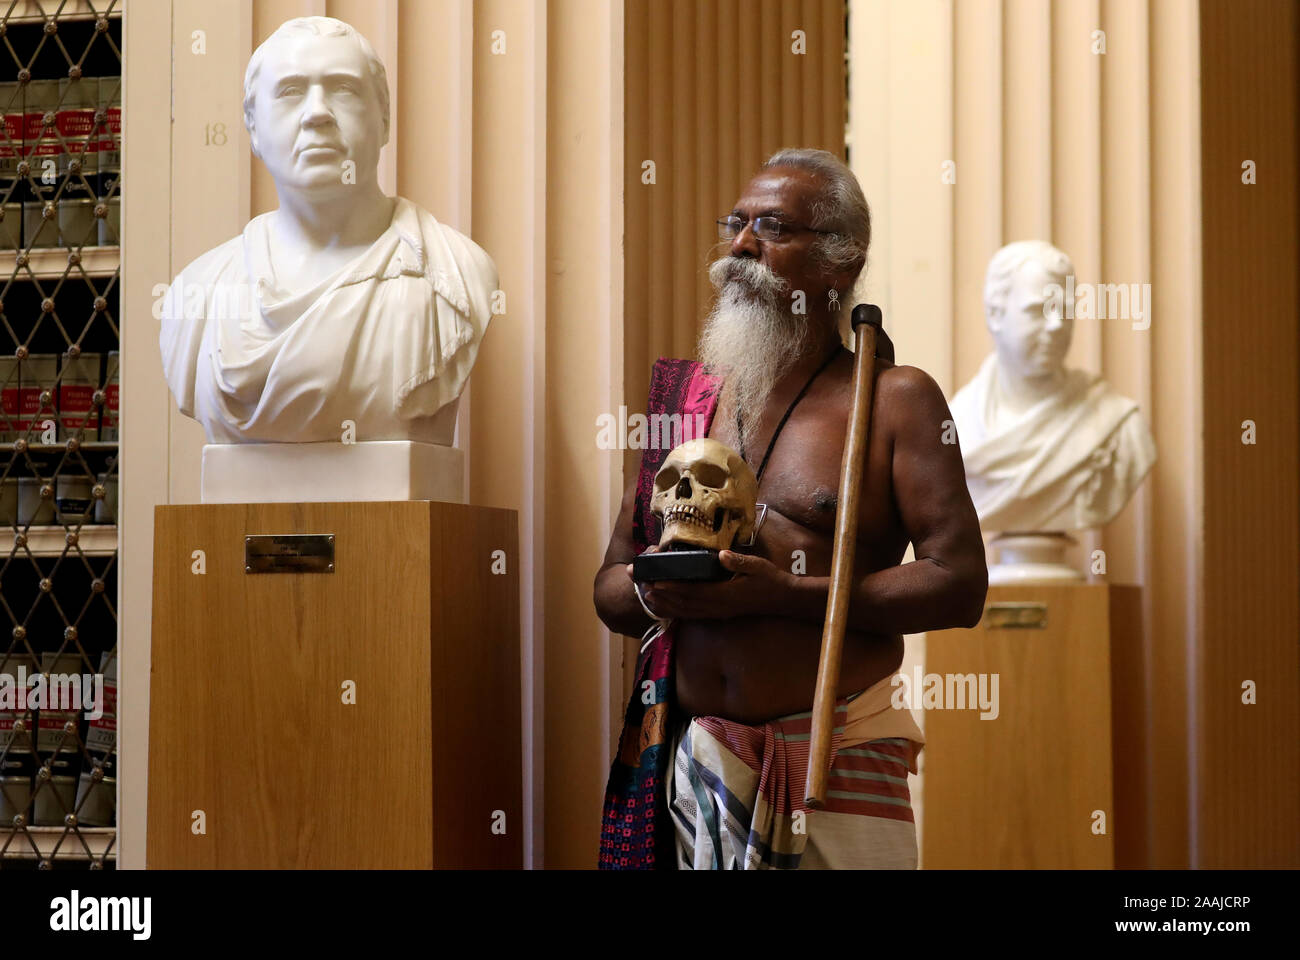 Wanniya Uruwarige, Leiter der Sri Lankan Dschungel - Wohnung vedda Stamm Menschen, hält eine von neun menschlichen Schädeln gedacht, mehr als 200 Jahre alt zu werden, nach einer Feierstunde in der Universität von Edinburgh Playfair Bibliothek die Rückkehr des angestammten bleibt auf die Heimat der Sri Lankischen tribespeople zu markieren. Stockfoto